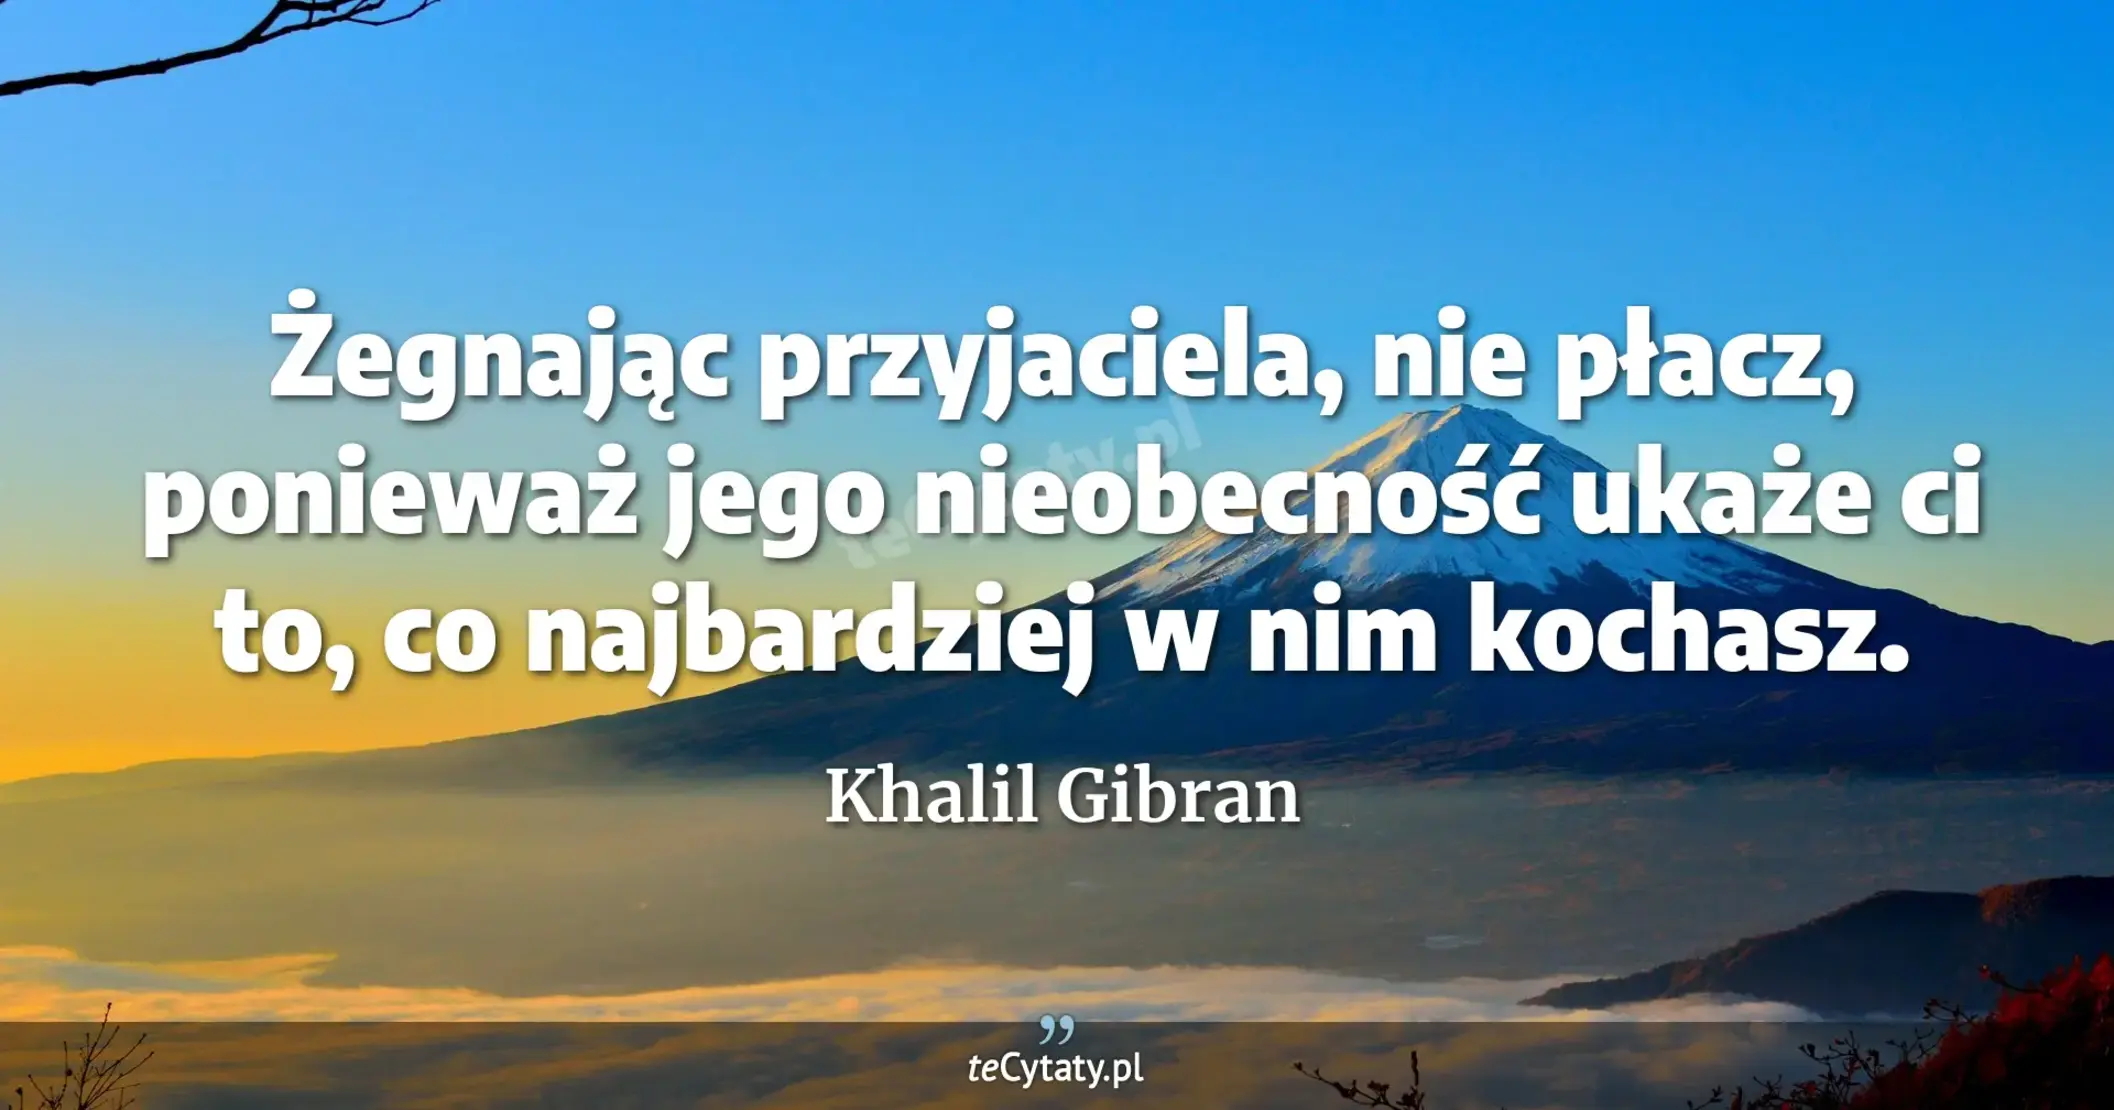 Żegnając przyjaciela, nie płacz, ponieważ jego nieobecność ukaże ci to, co najbardziej w nim kochasz. - Khalil Gibran